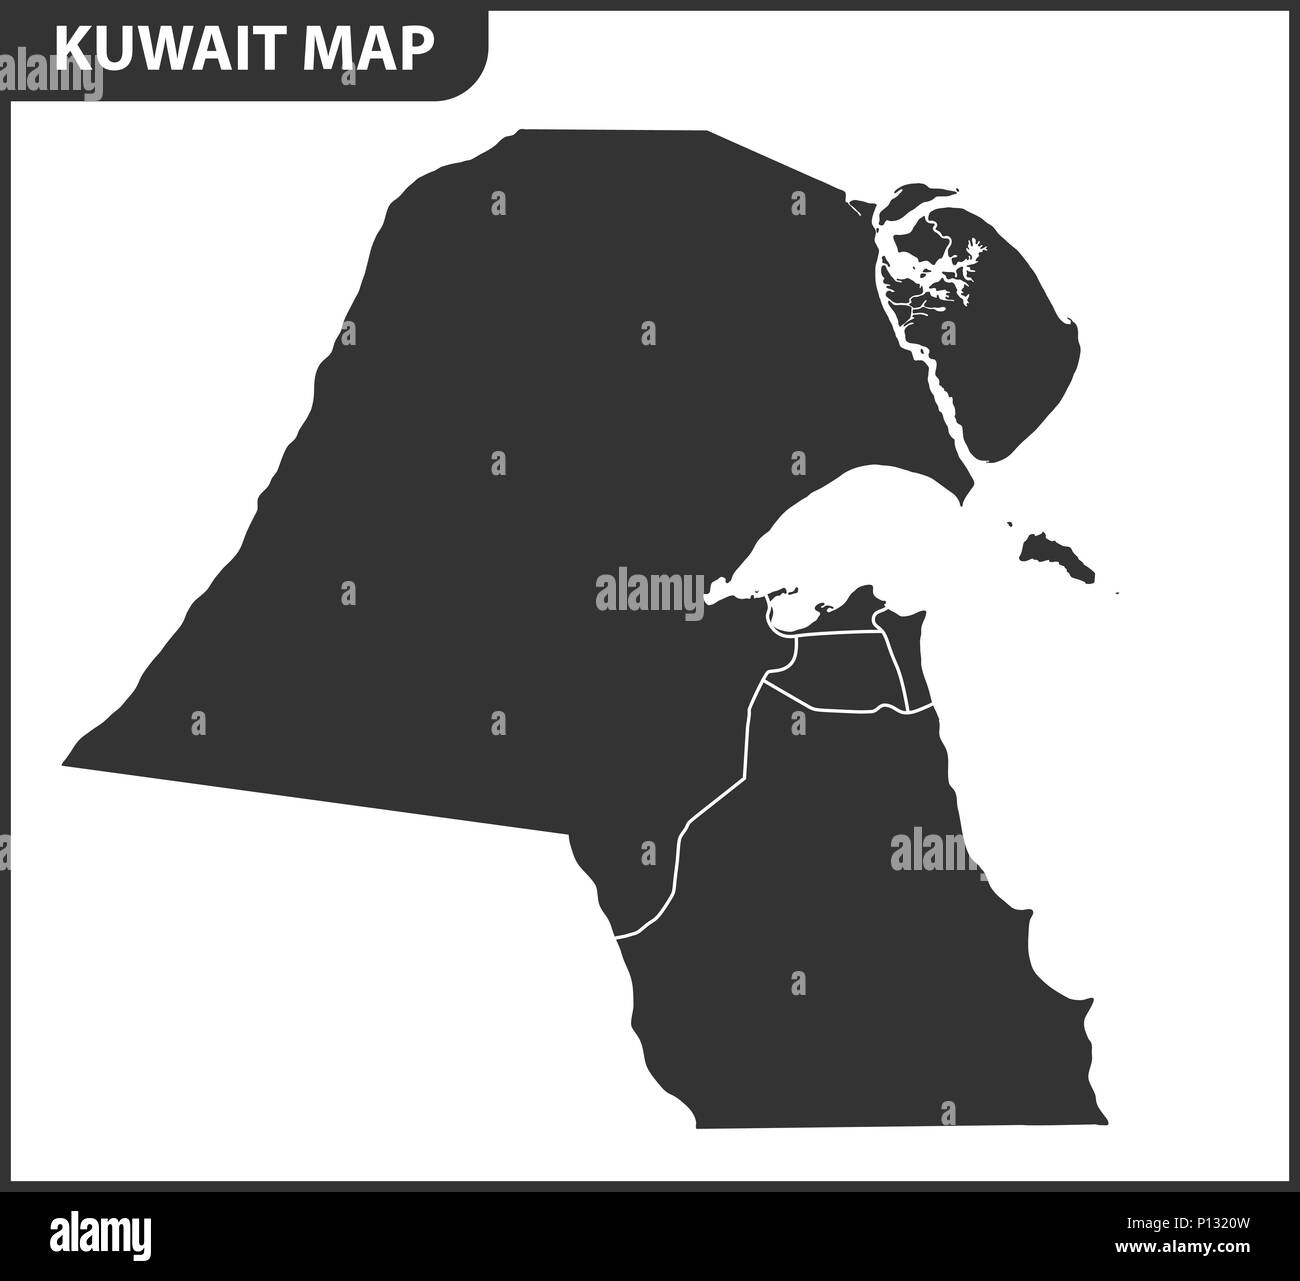 Die detaillierte Karte der Kuwait mit Regionen oder Staaten. Verwaltungseinheit. Stock Vektor